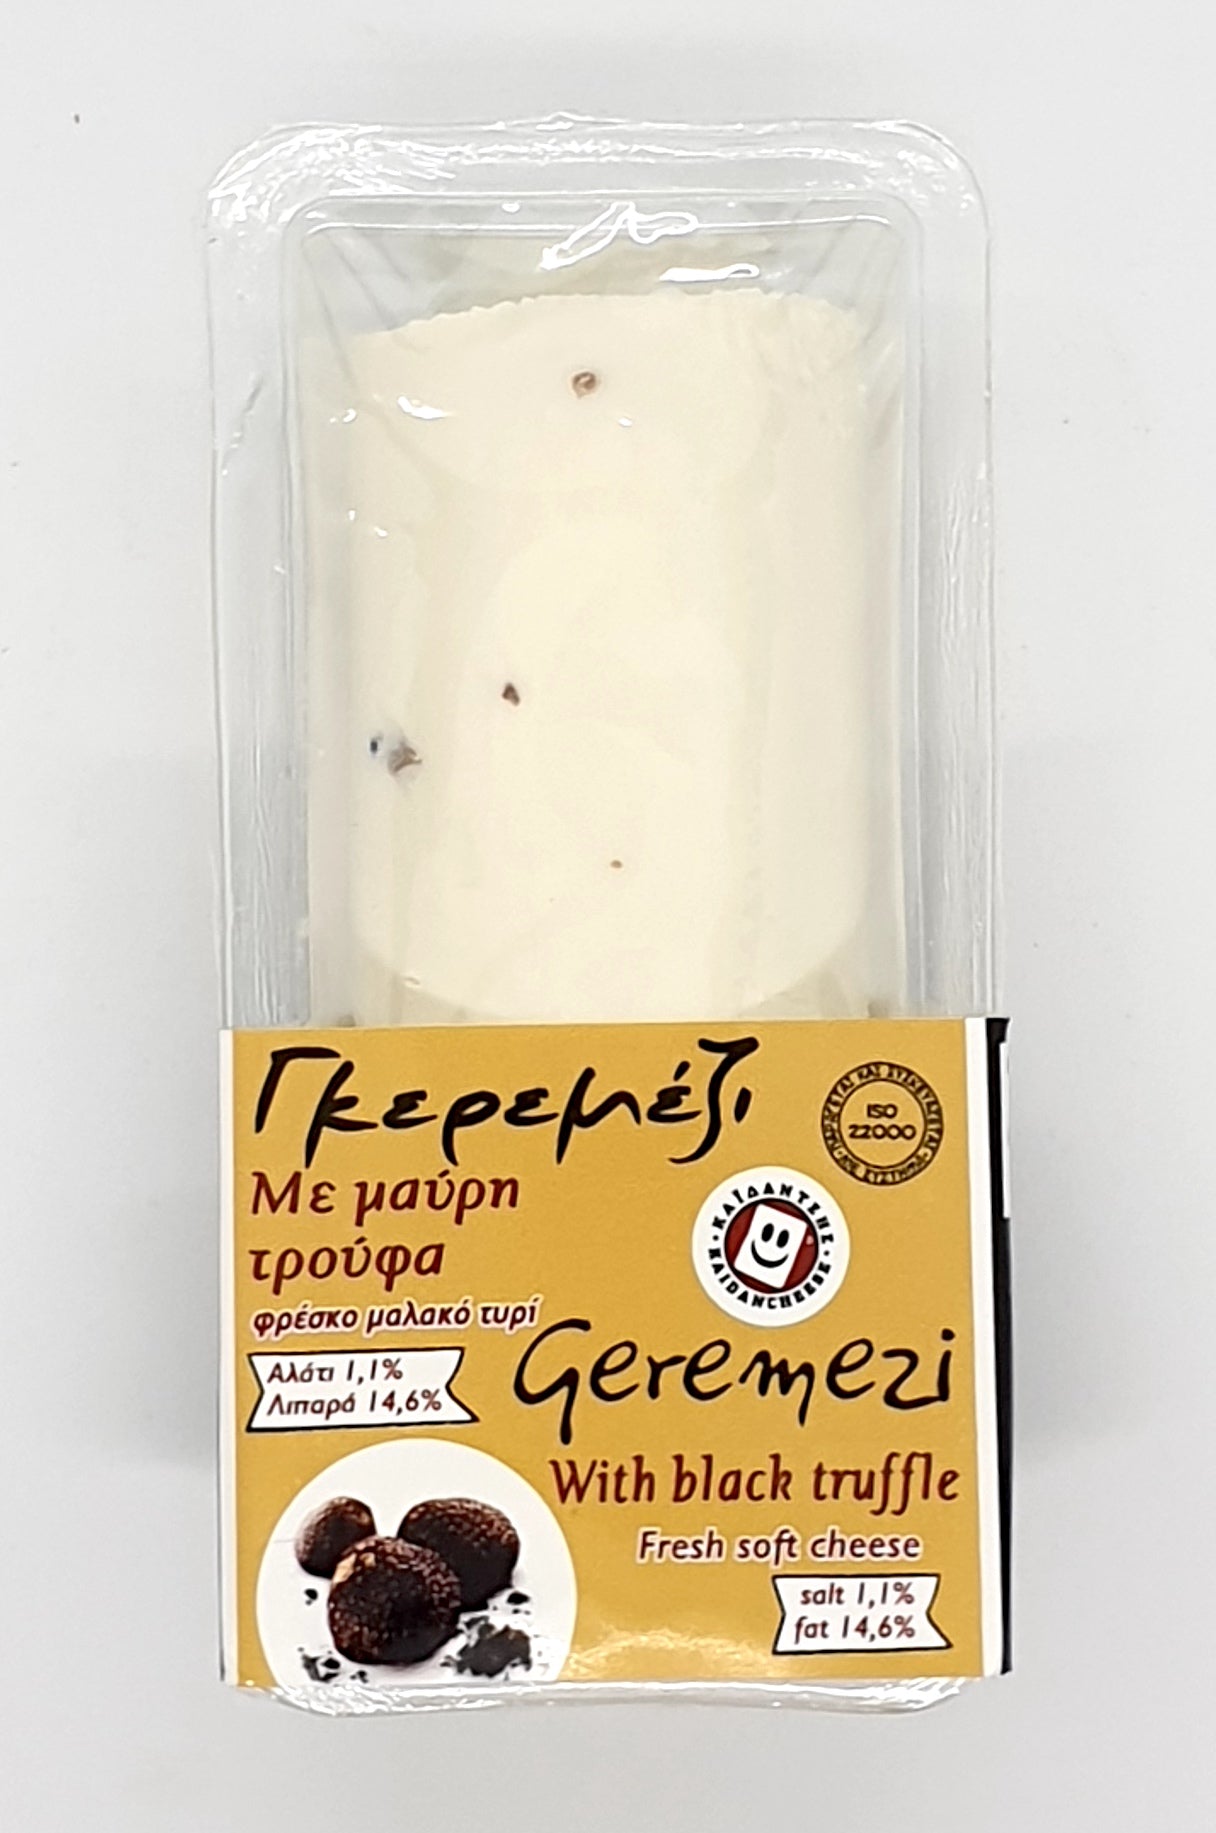 Γκερεμέζι μαλακό τυρί κορμός από πρόβειο γάλα, με τρούφα